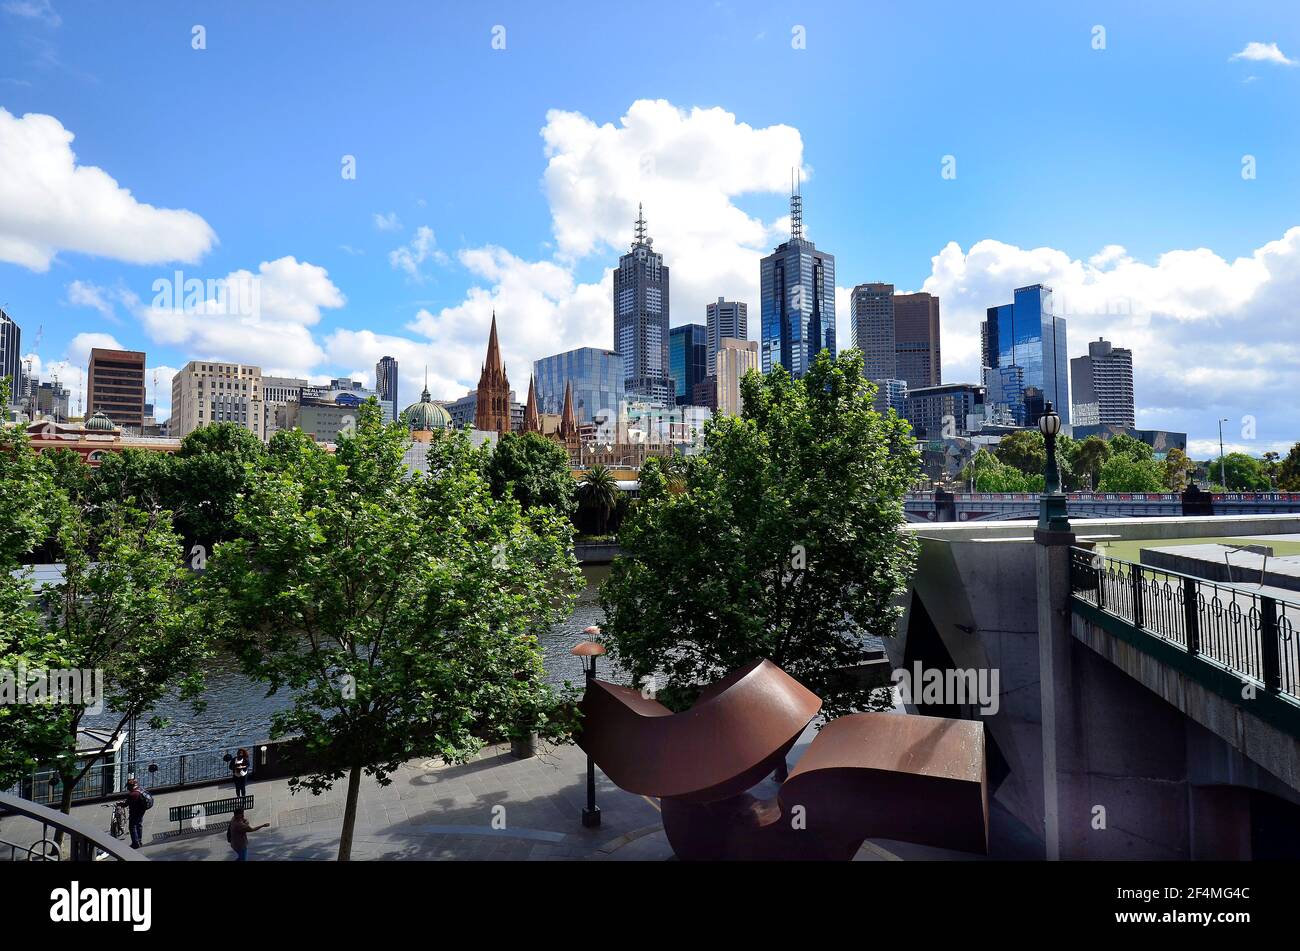 Melbourne, VIC, Australia - 04 de noviembre de 2017: Paisaje urbano a la Plaza de la Federación, la catedral de San Pablo y la estación de Flinders Street con el puente Princes Foto de stock